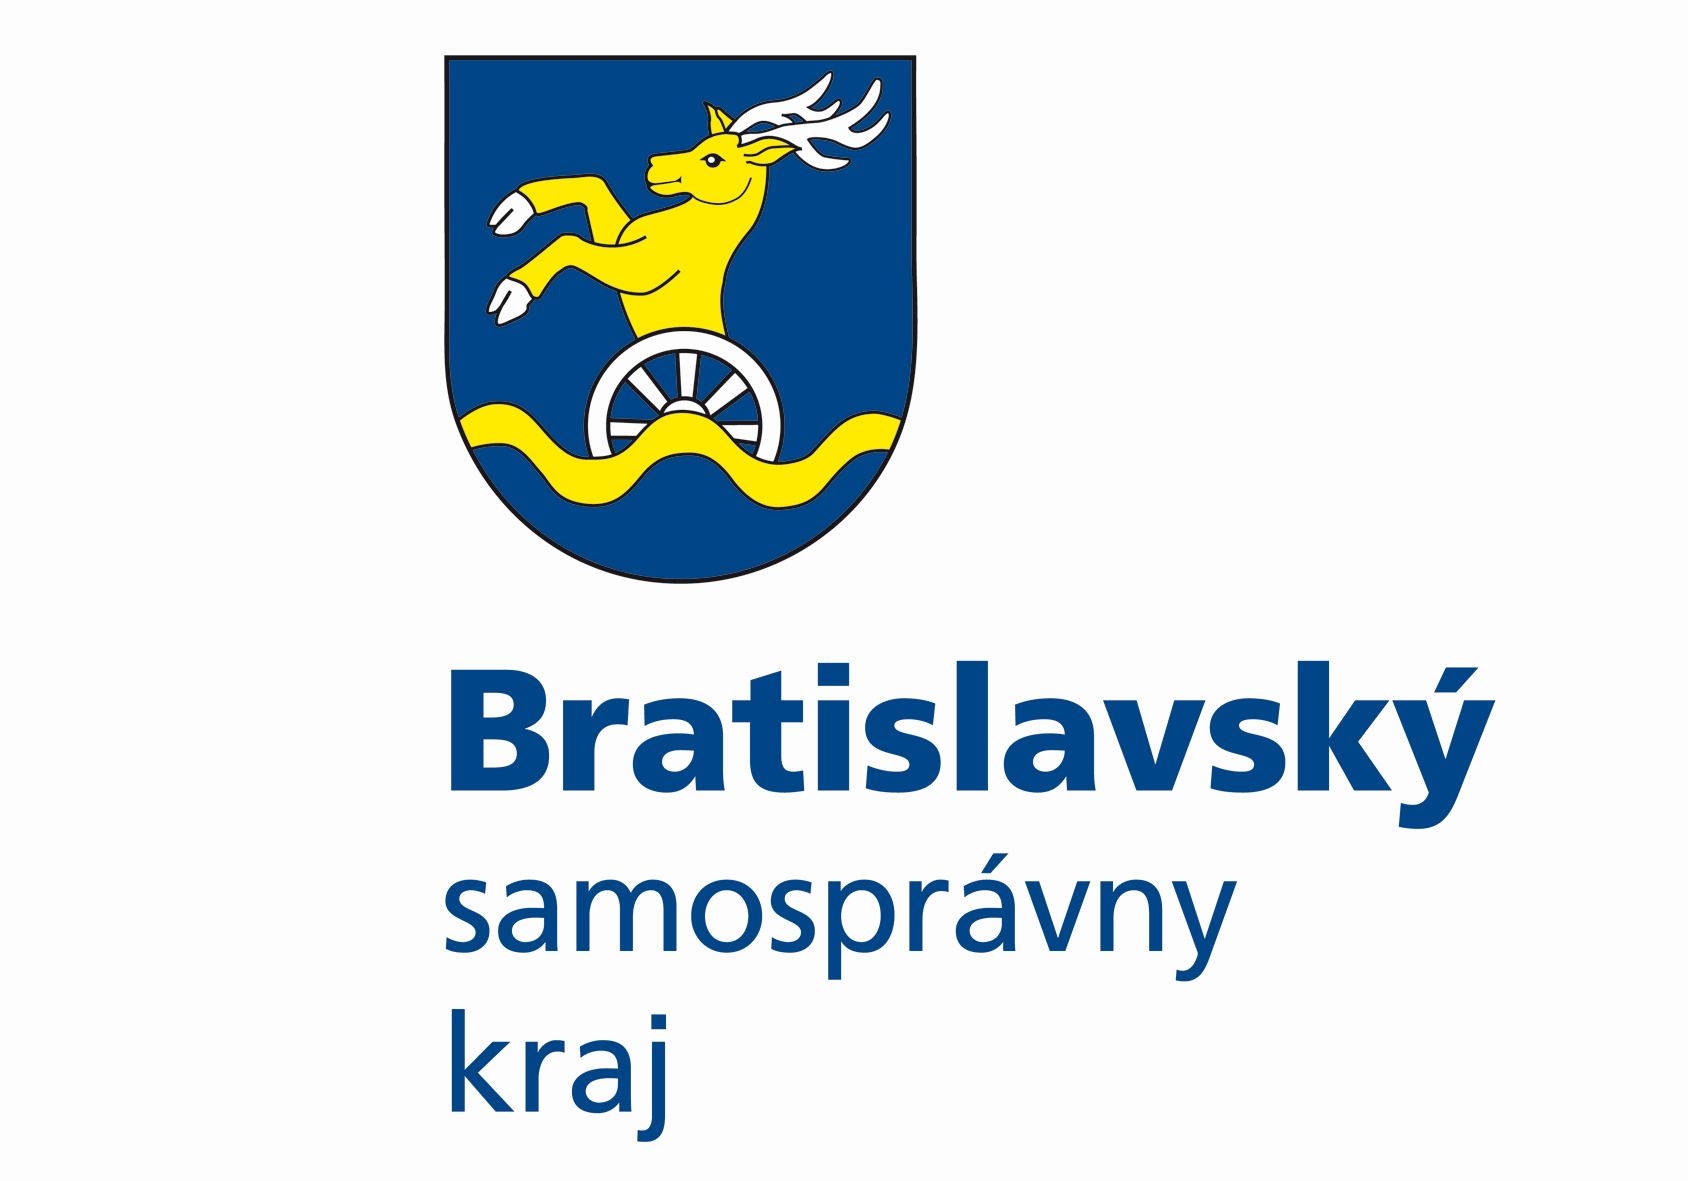 BSK logo